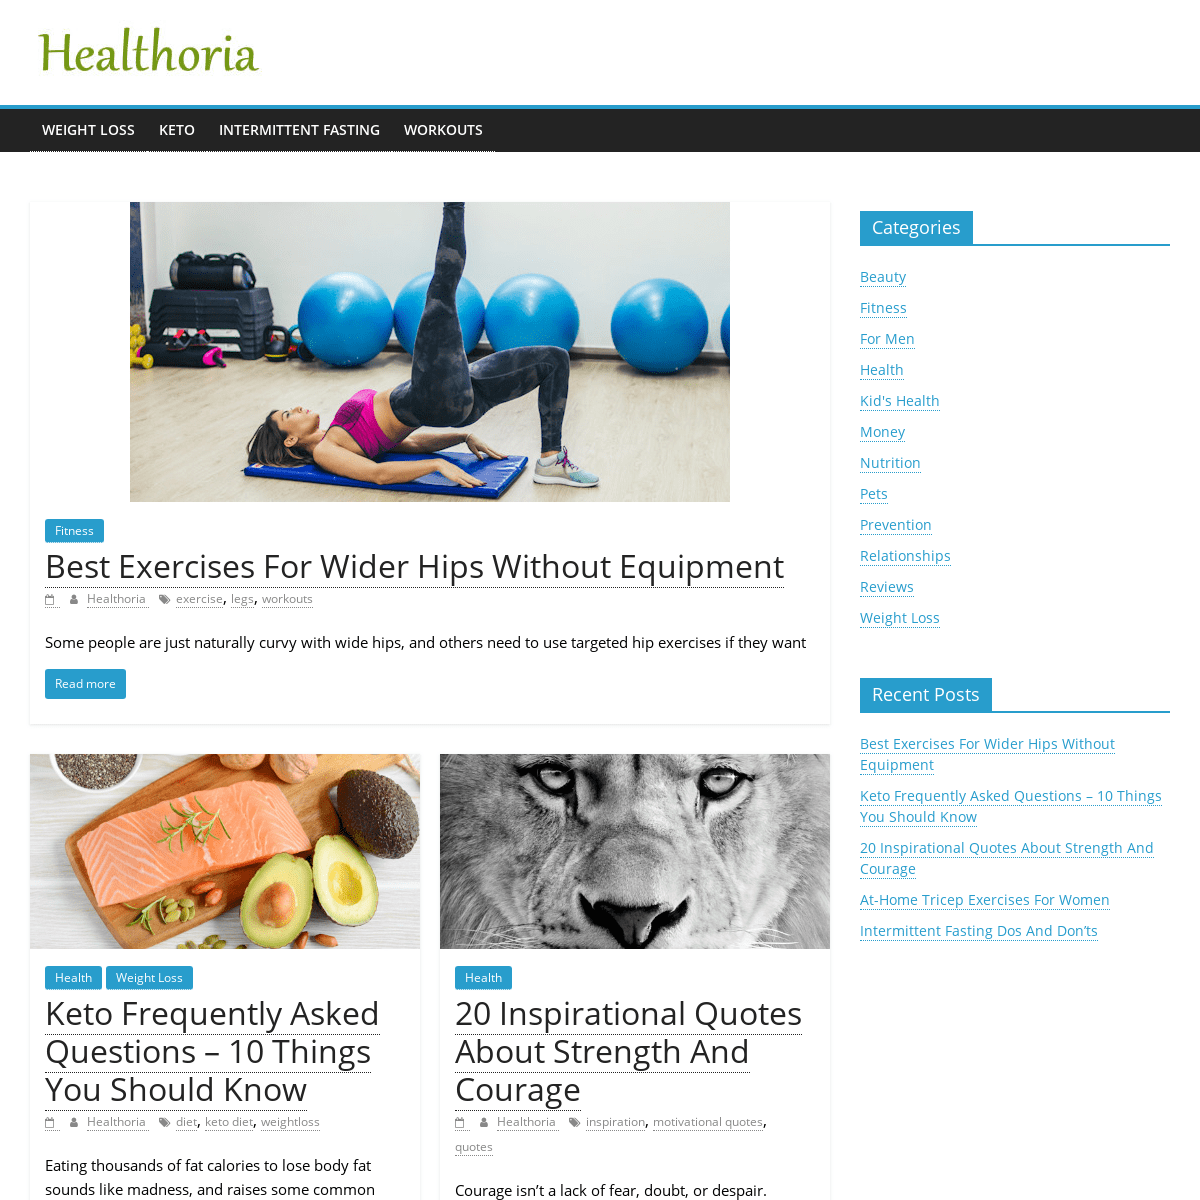 A complete backup of healthoria.com